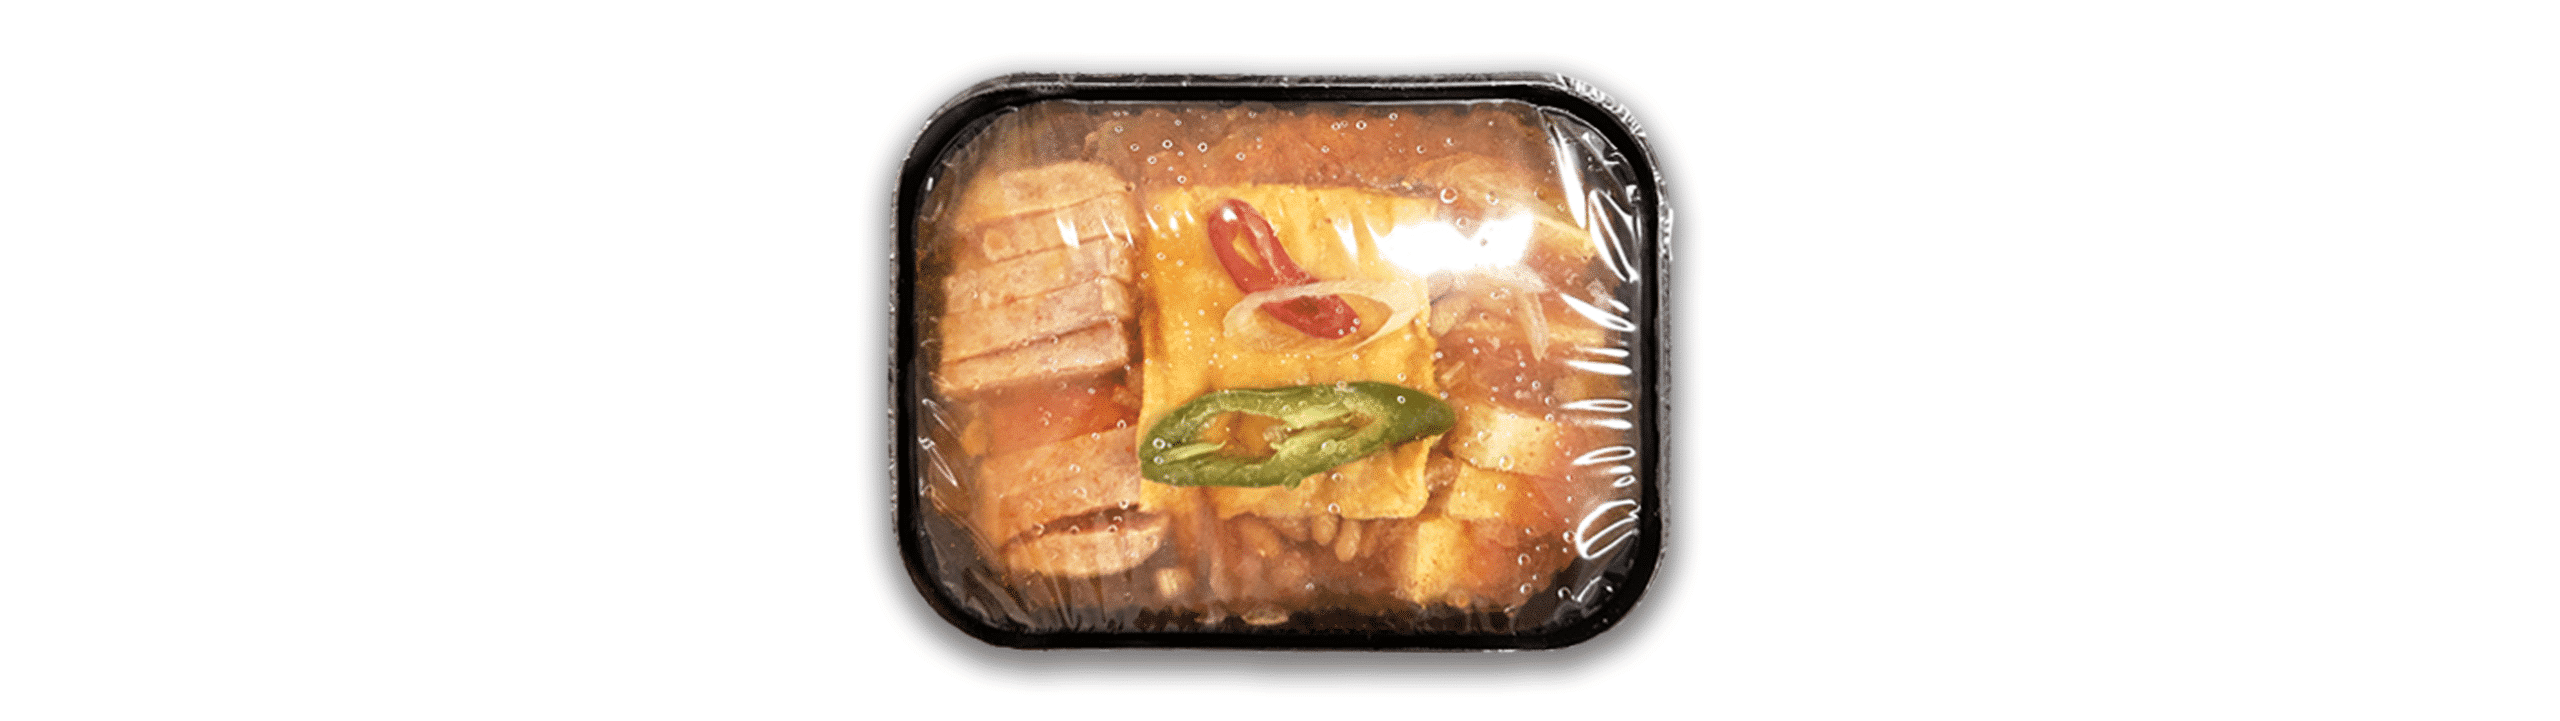 韓國食品-[新世界韓國食品] 韓式部隊鍋 1.5kg (急凍) *免費贈送公仔麵餅!